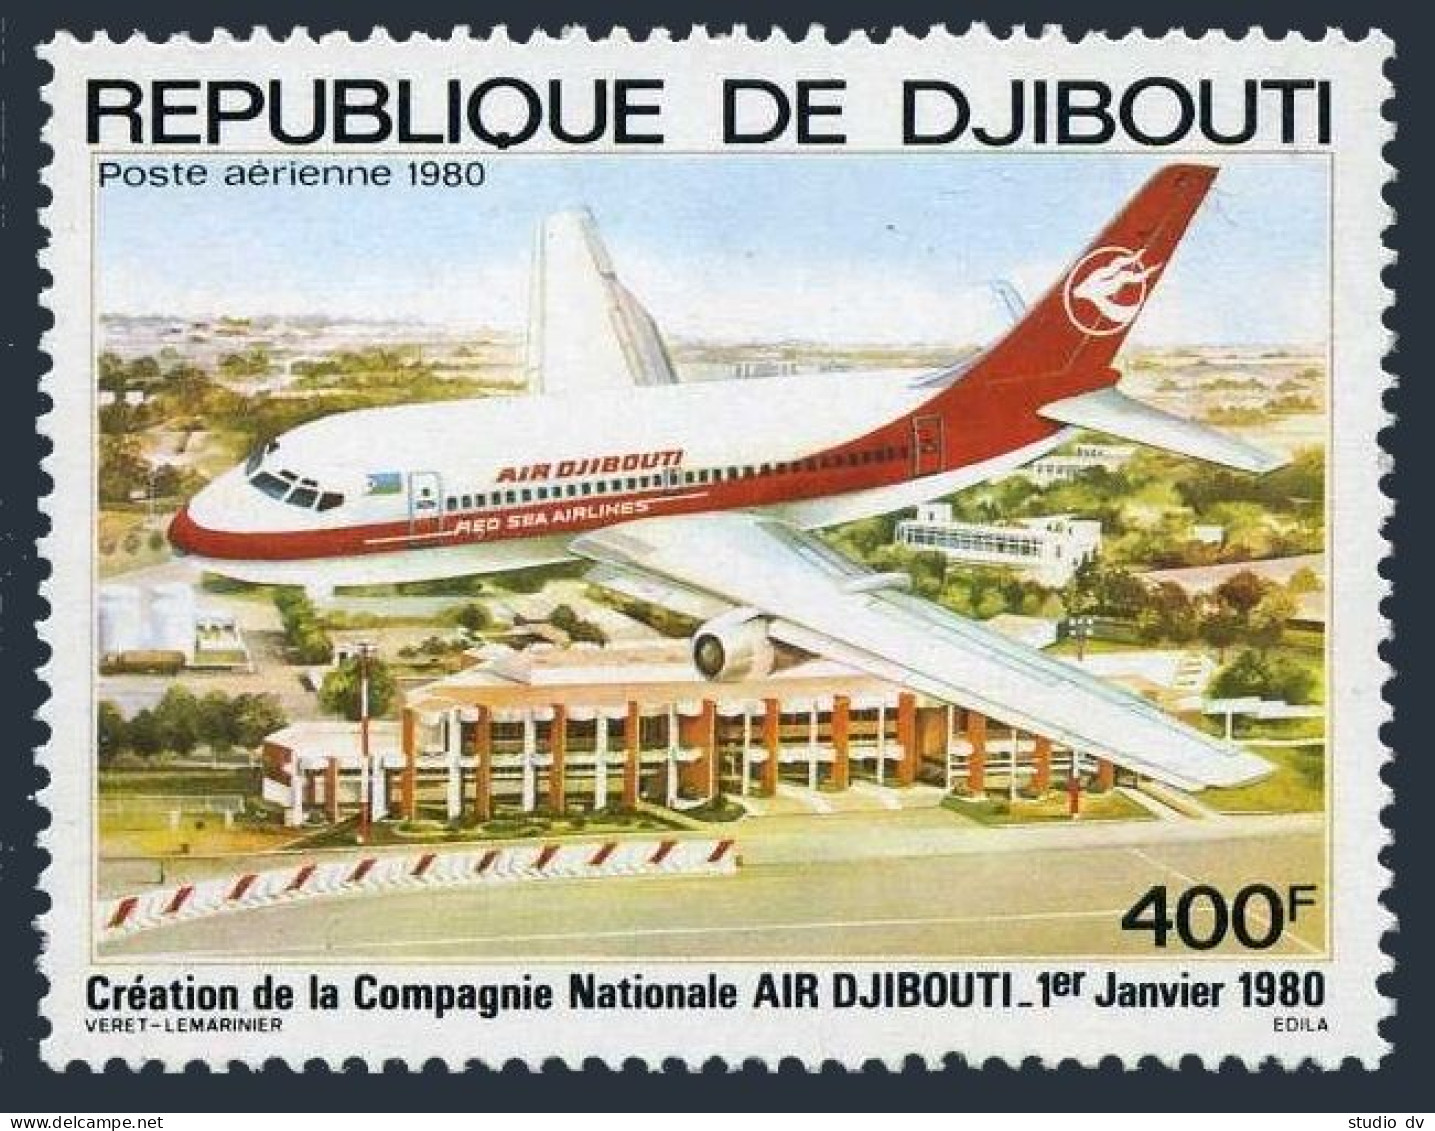 Djibouti C132,MNH.Michel 270. Air Djibouti,1st Ann.1980.Plane. - Gibuti (1977-...)